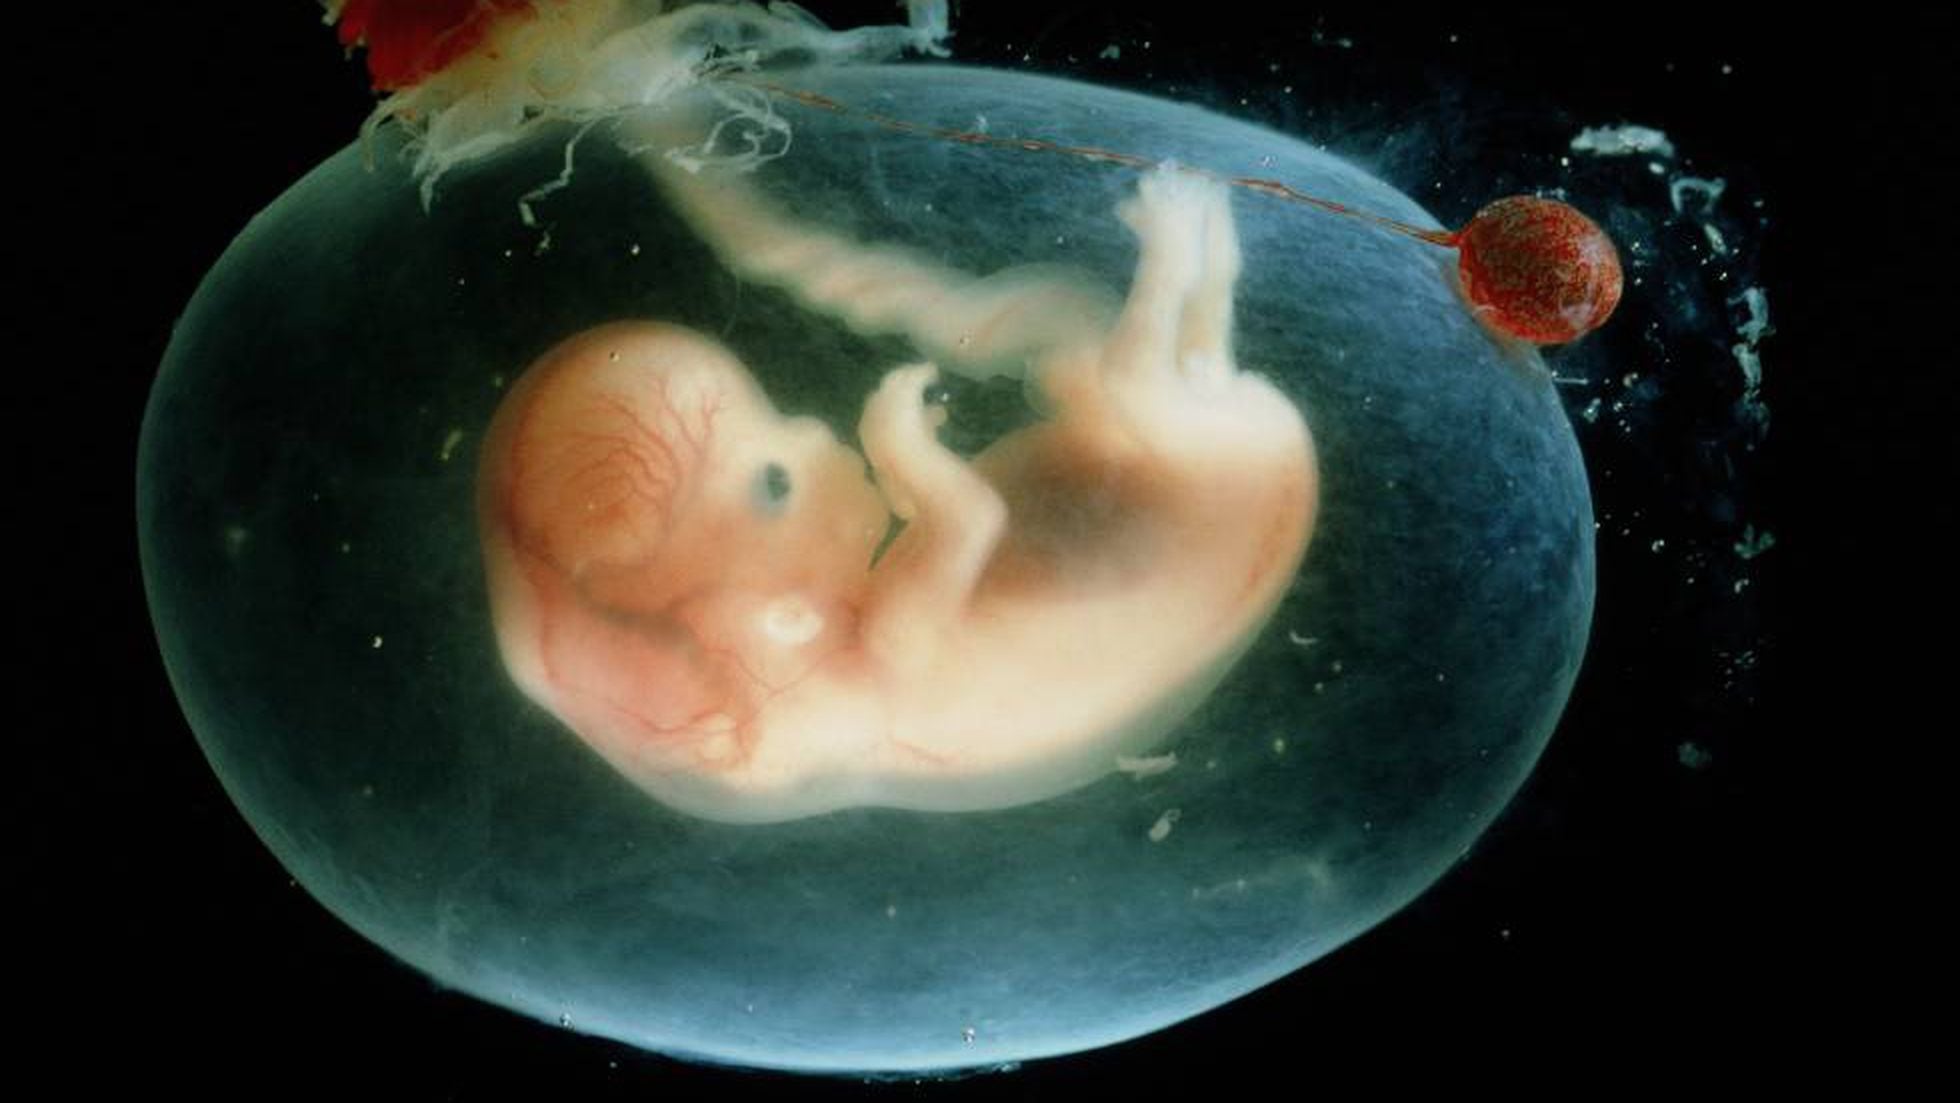 Mujer de Estados Unidos da a luz bebé de un embrión congelado hace